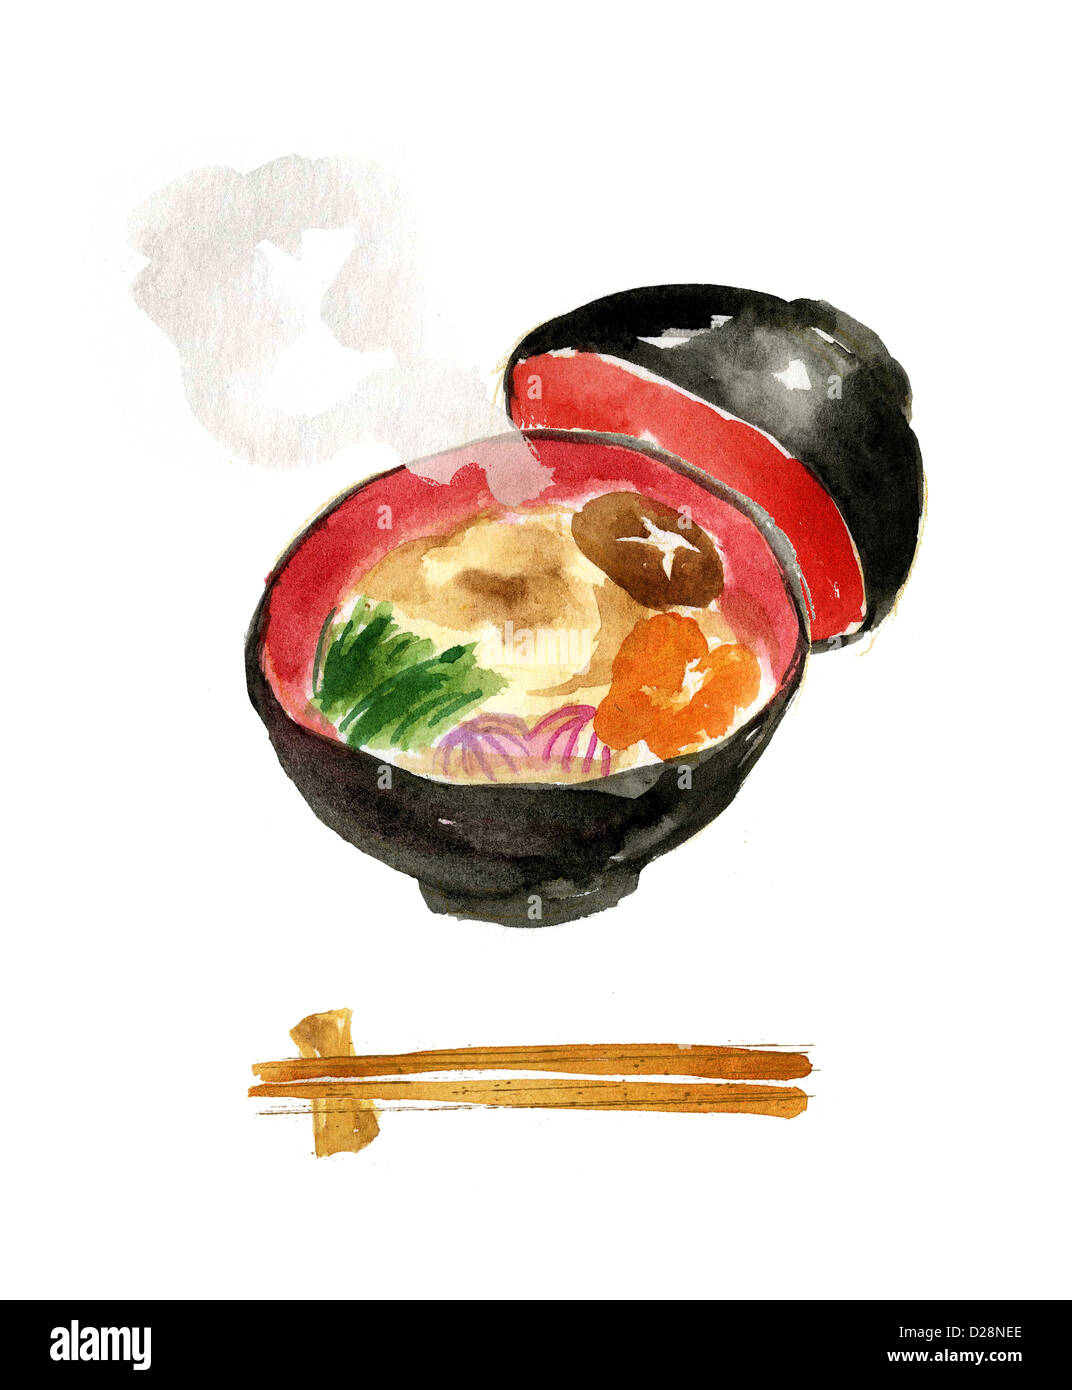 Ilustración de la comida japonesa Foto de stock